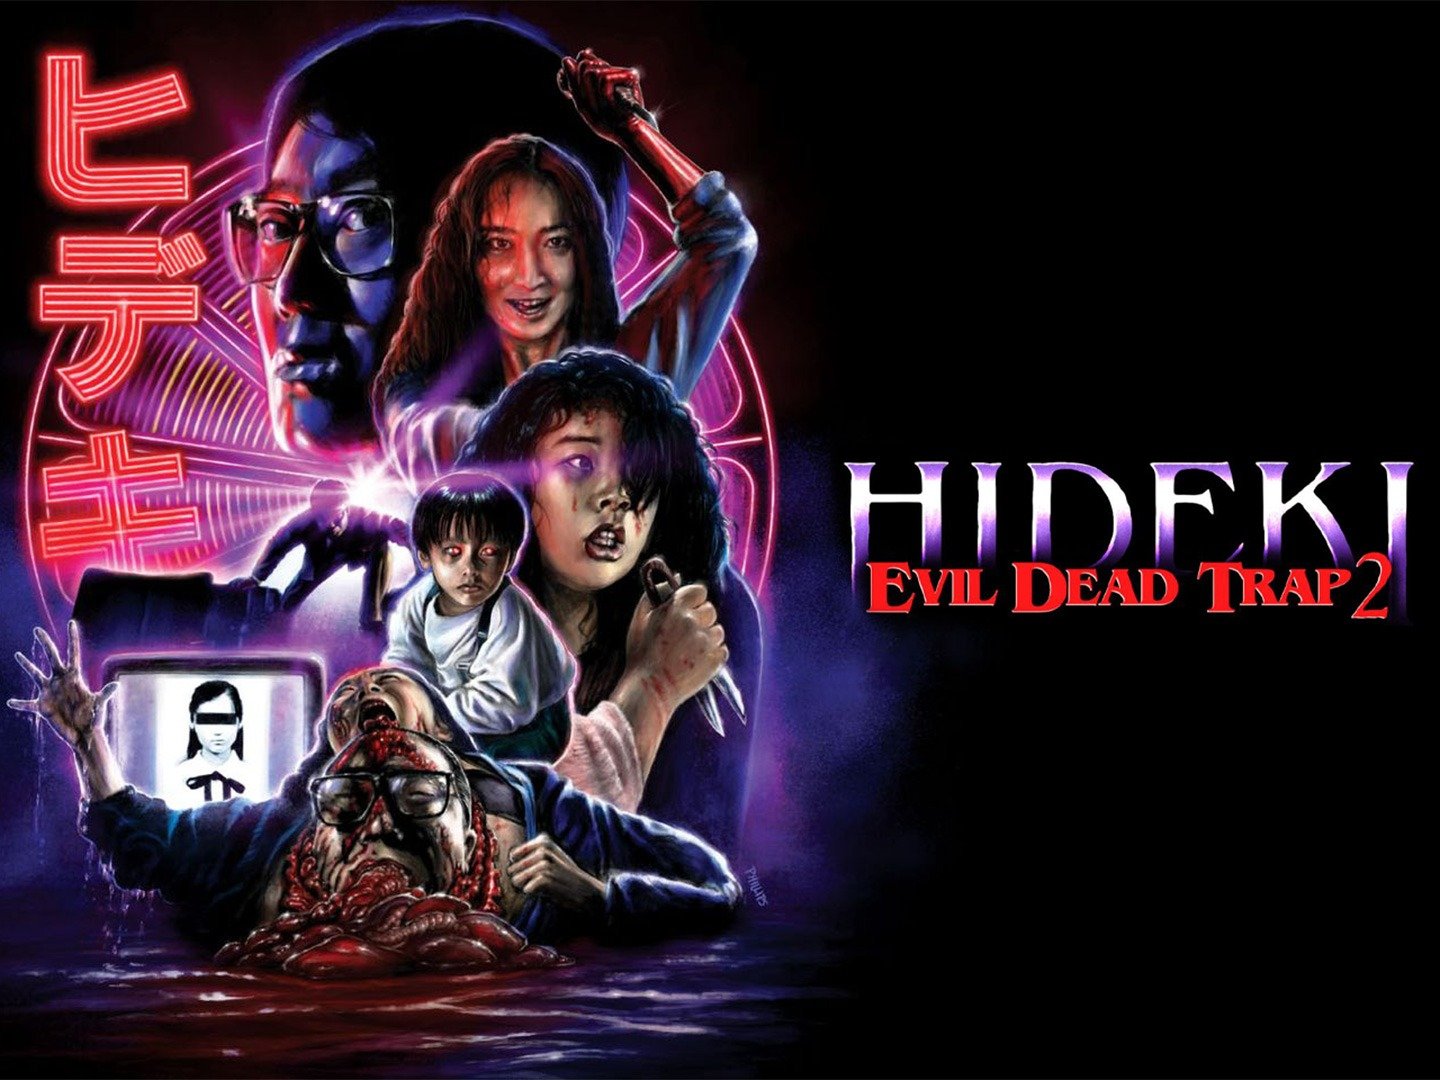 Evil Dead Trap 2 Hideki picture